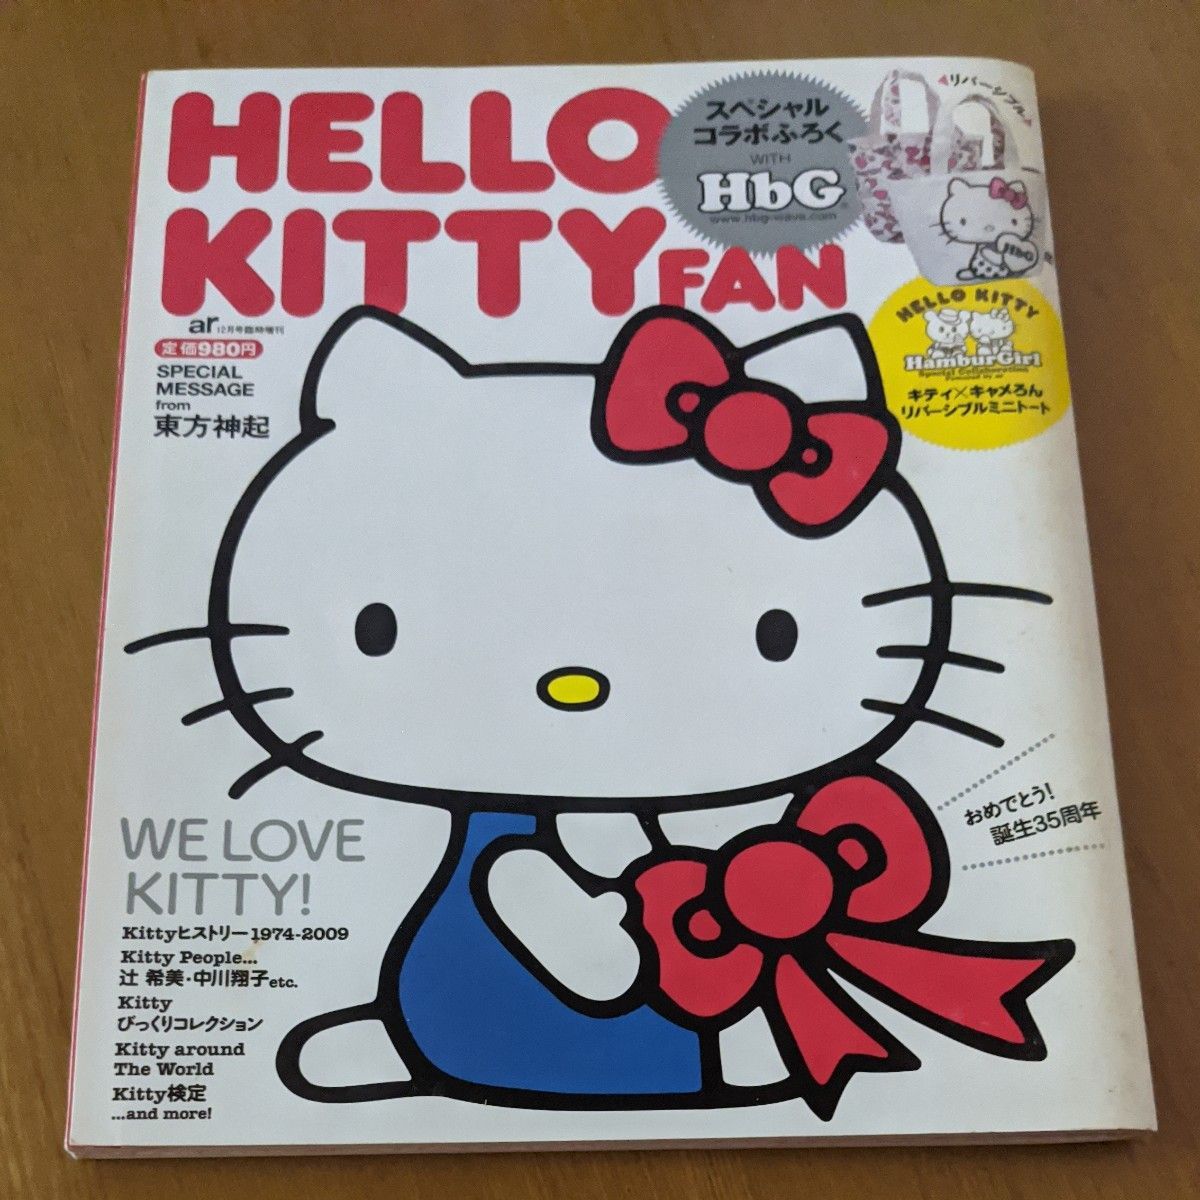 カルチャー雑誌 HELLO KITTY FAN 2009年12月号 (別冊付録1点)